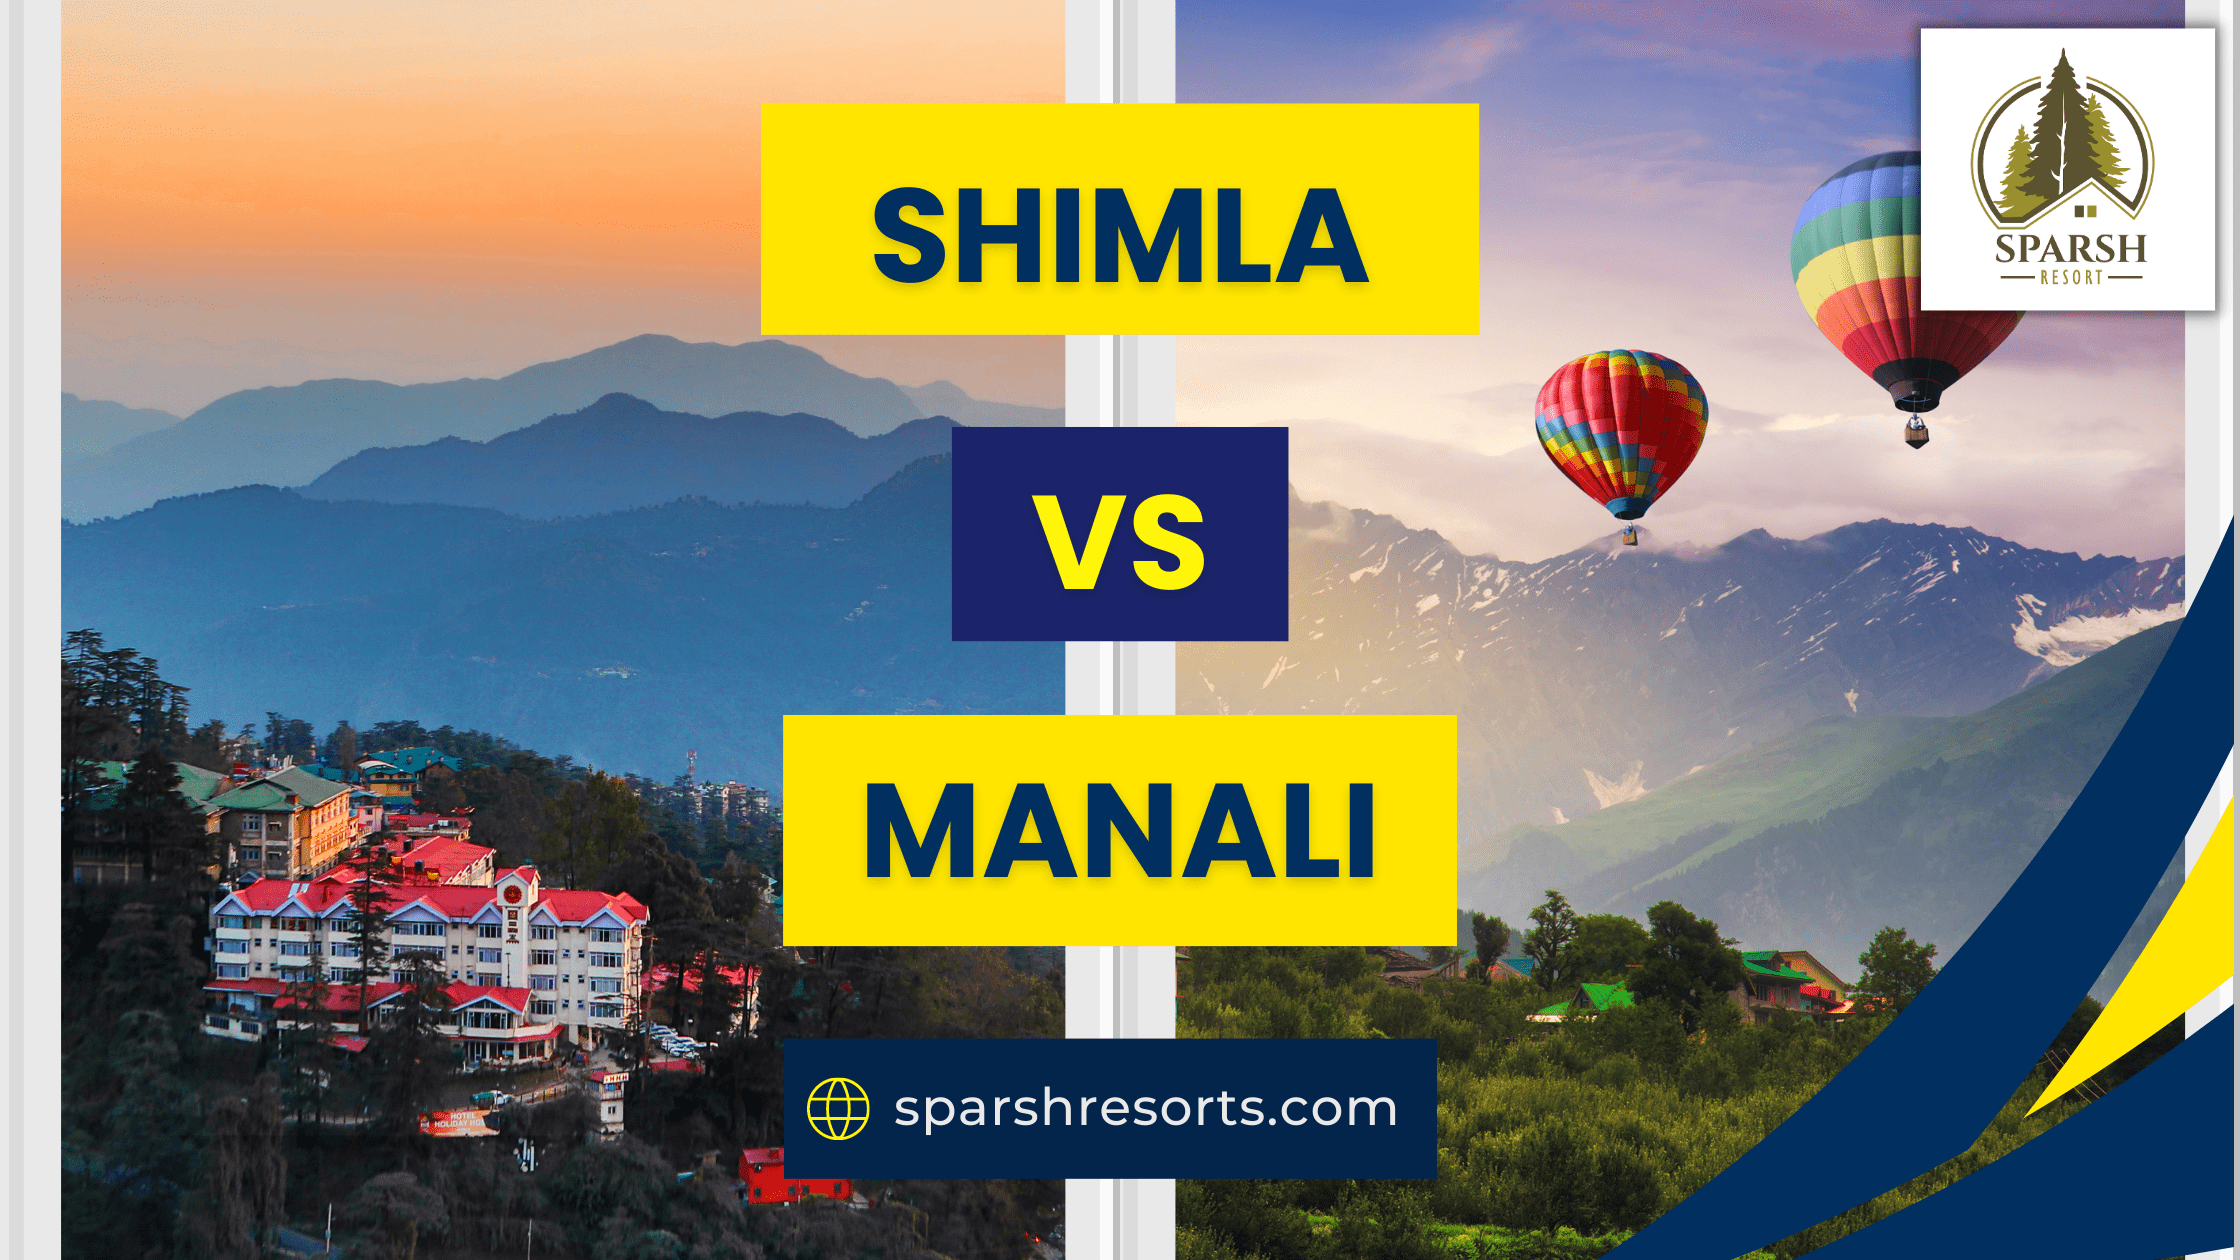 Shimla vs Manali - Sparsh Resort